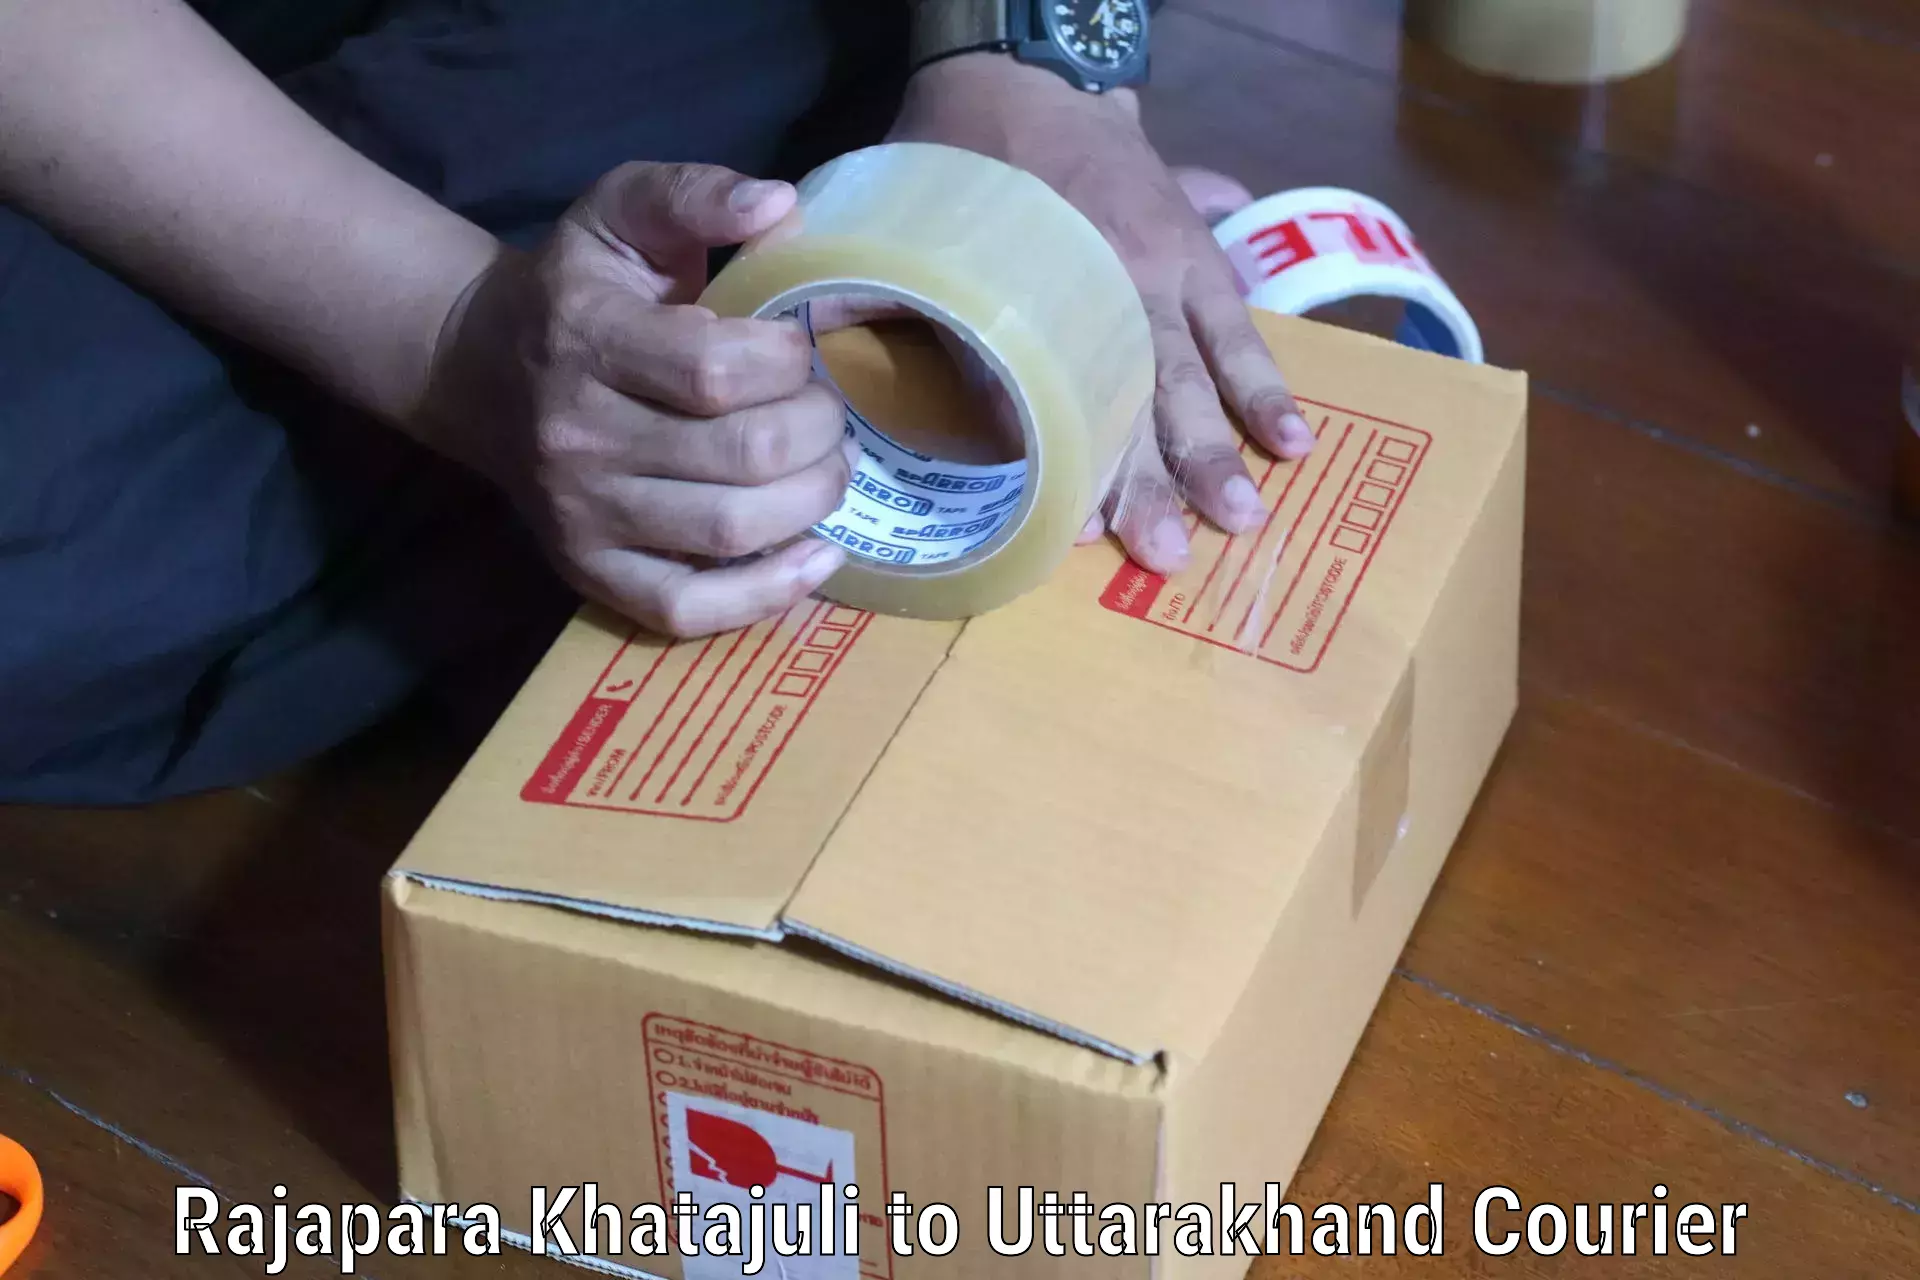 Specialized shipment handling Rajapara Khatajuli to Uttarakhand